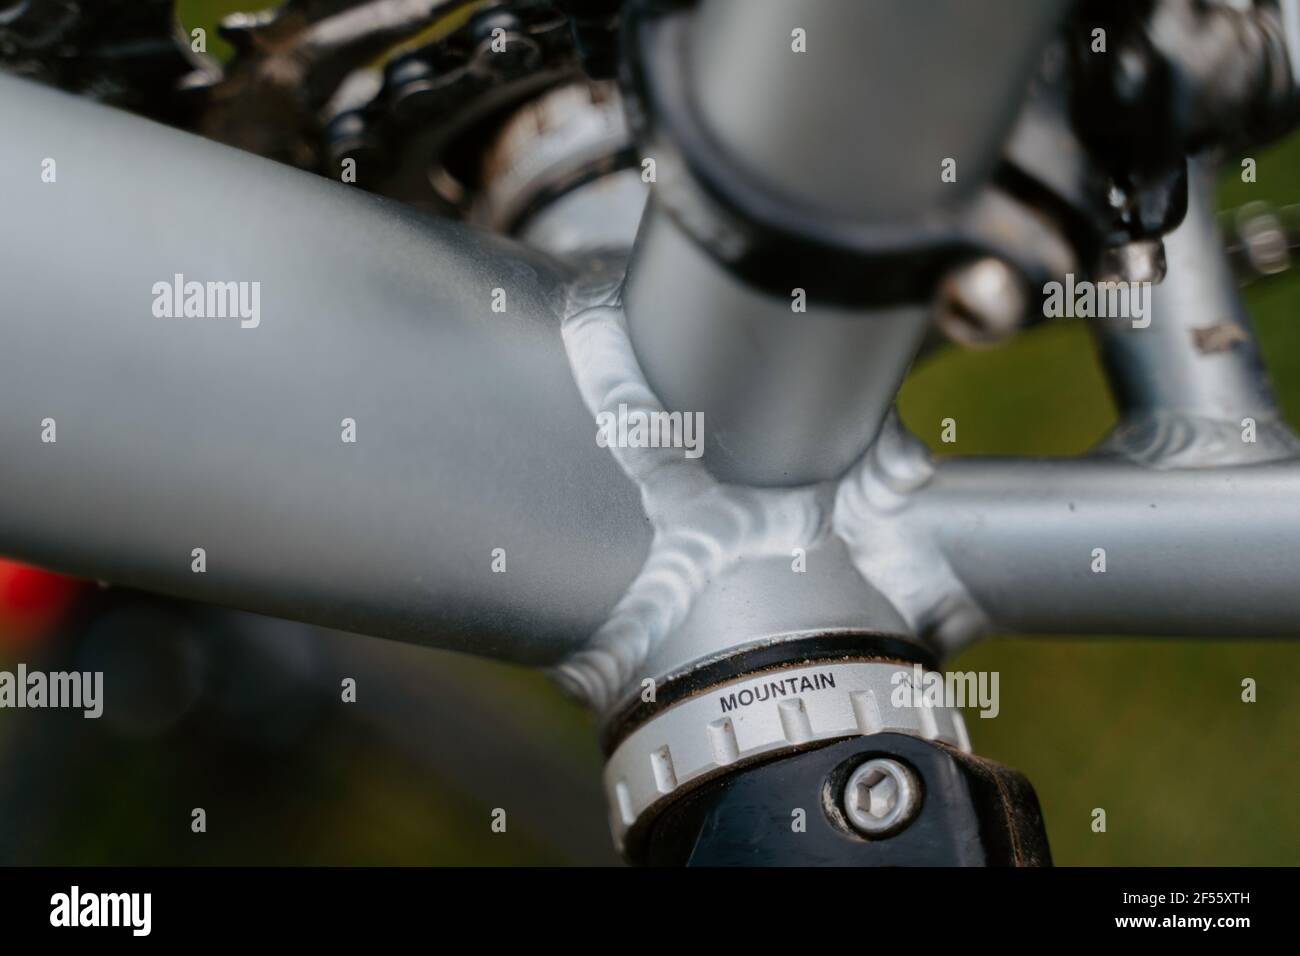 Soudure du cadre de vélo Photo Stock - Alamy